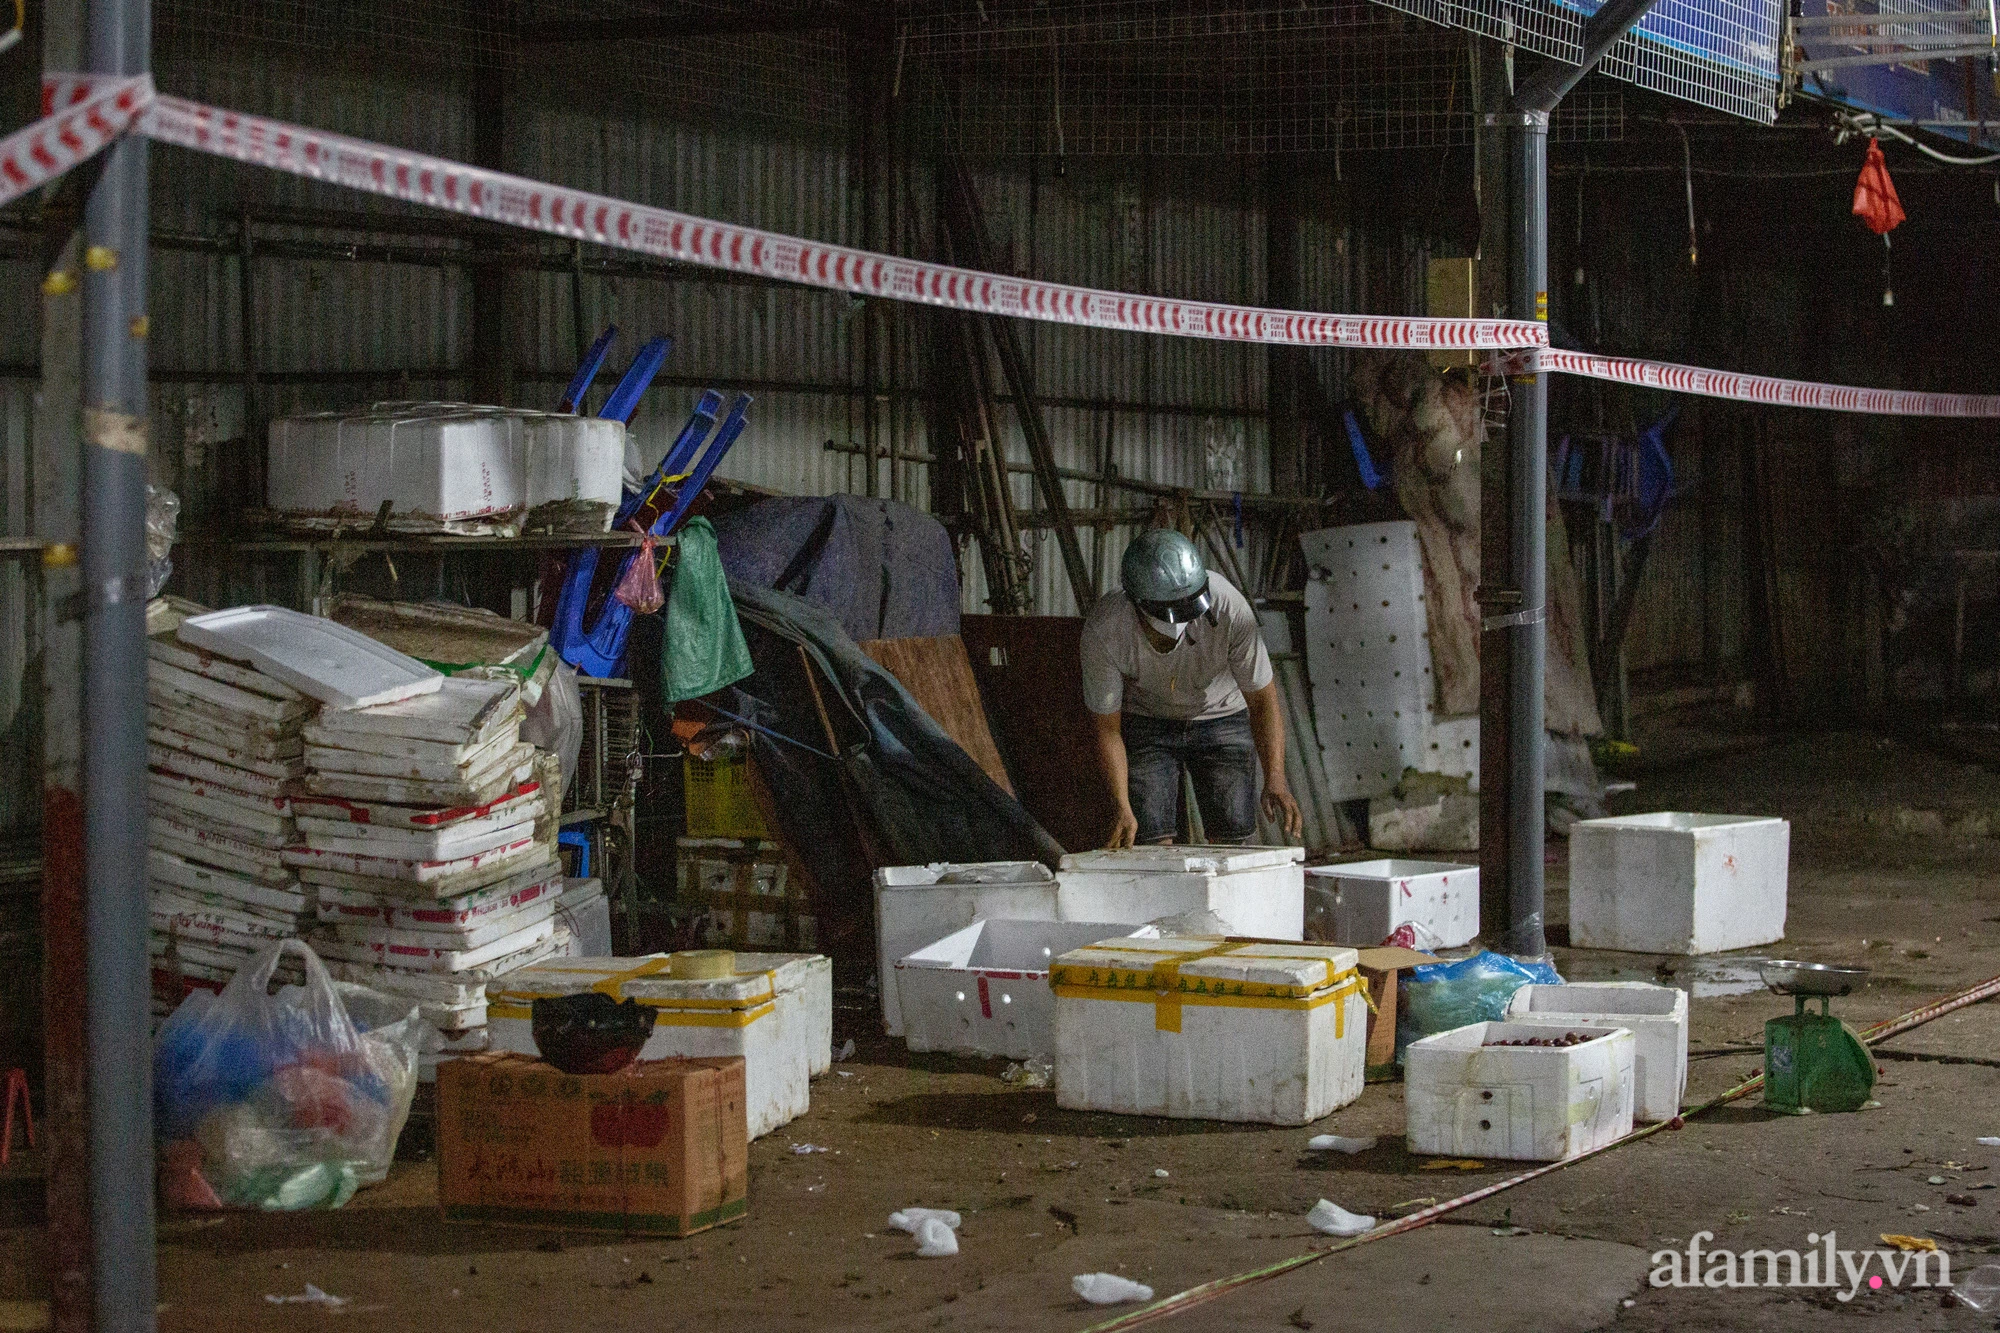 Tiểu thương chợ Phùng Khoang hối hả thu dọn hàng hóa trong đêm sau khi người phụ nữ bán rau tại chợ bất ngờ nhận kết quả dương tính SARS-CoV-2 - Ảnh 3.